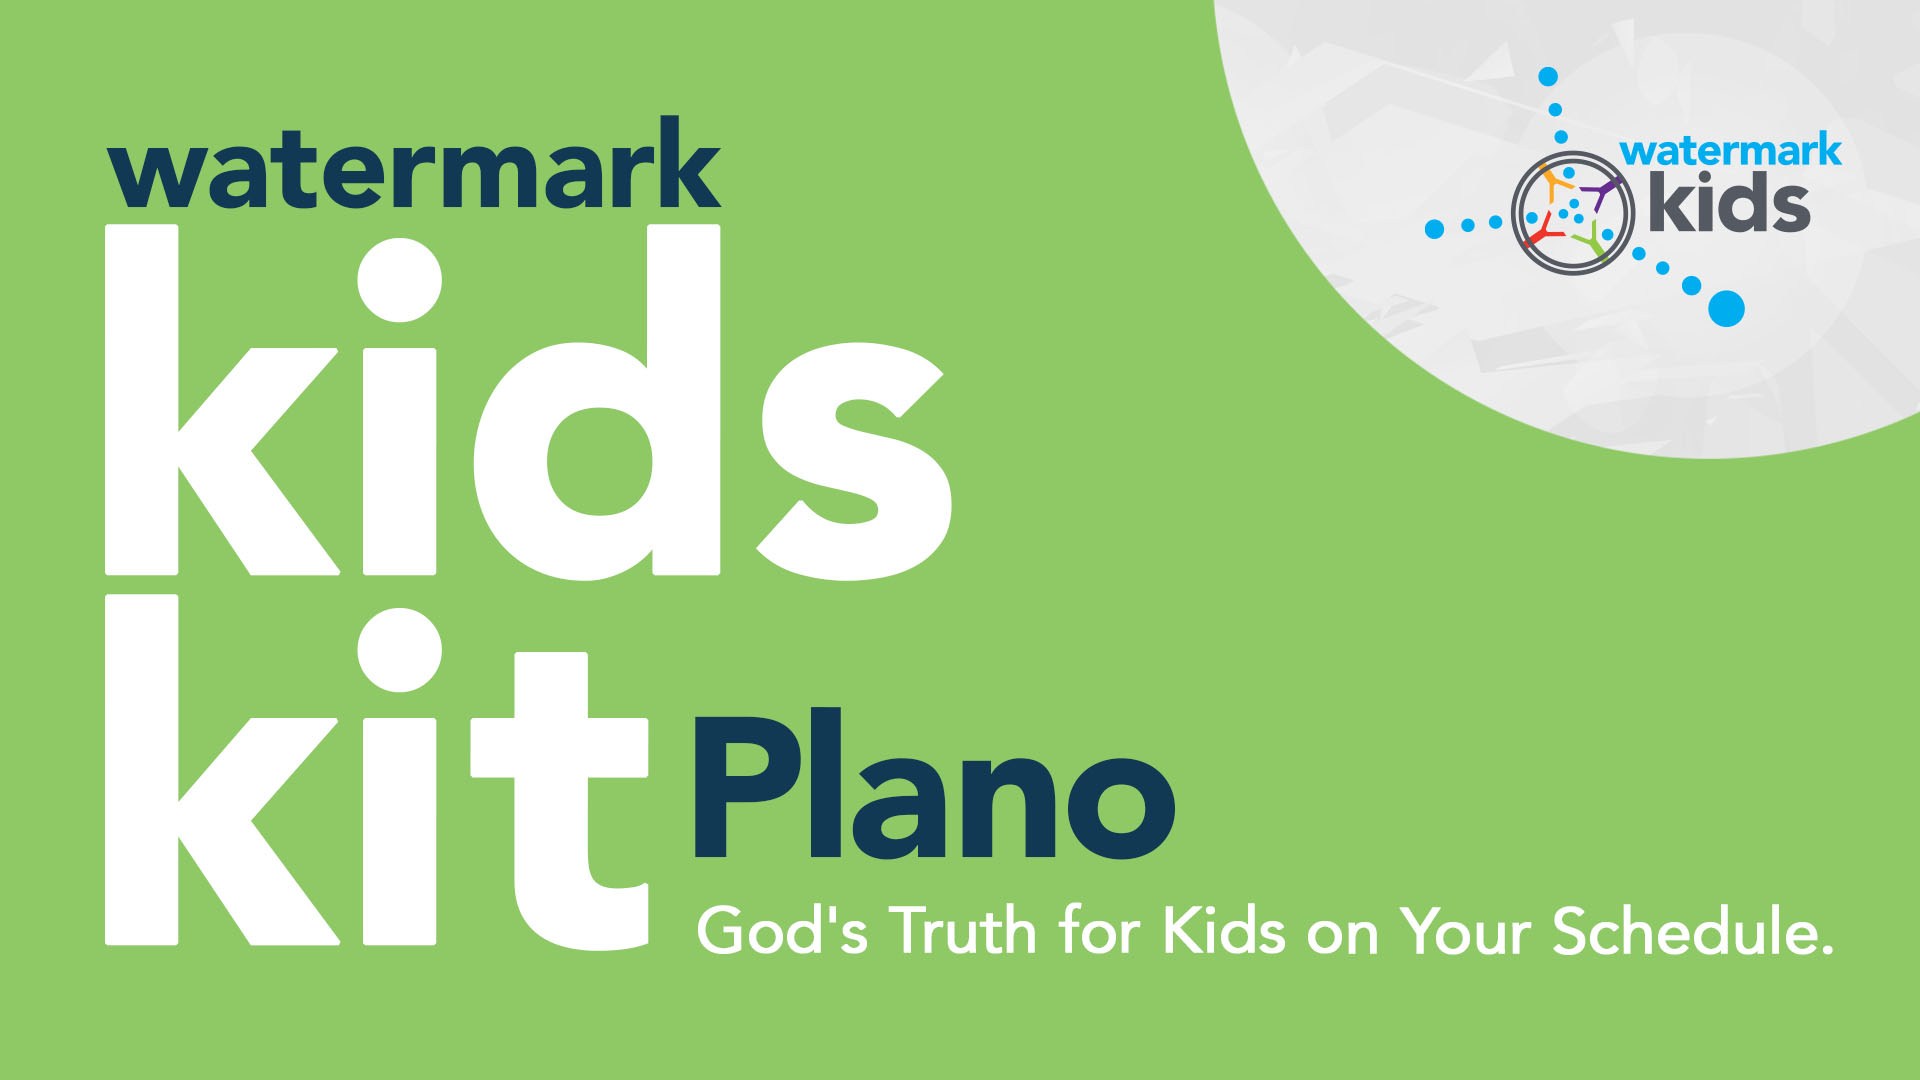 Plano Kids Kit for Sept 27 Hero Image